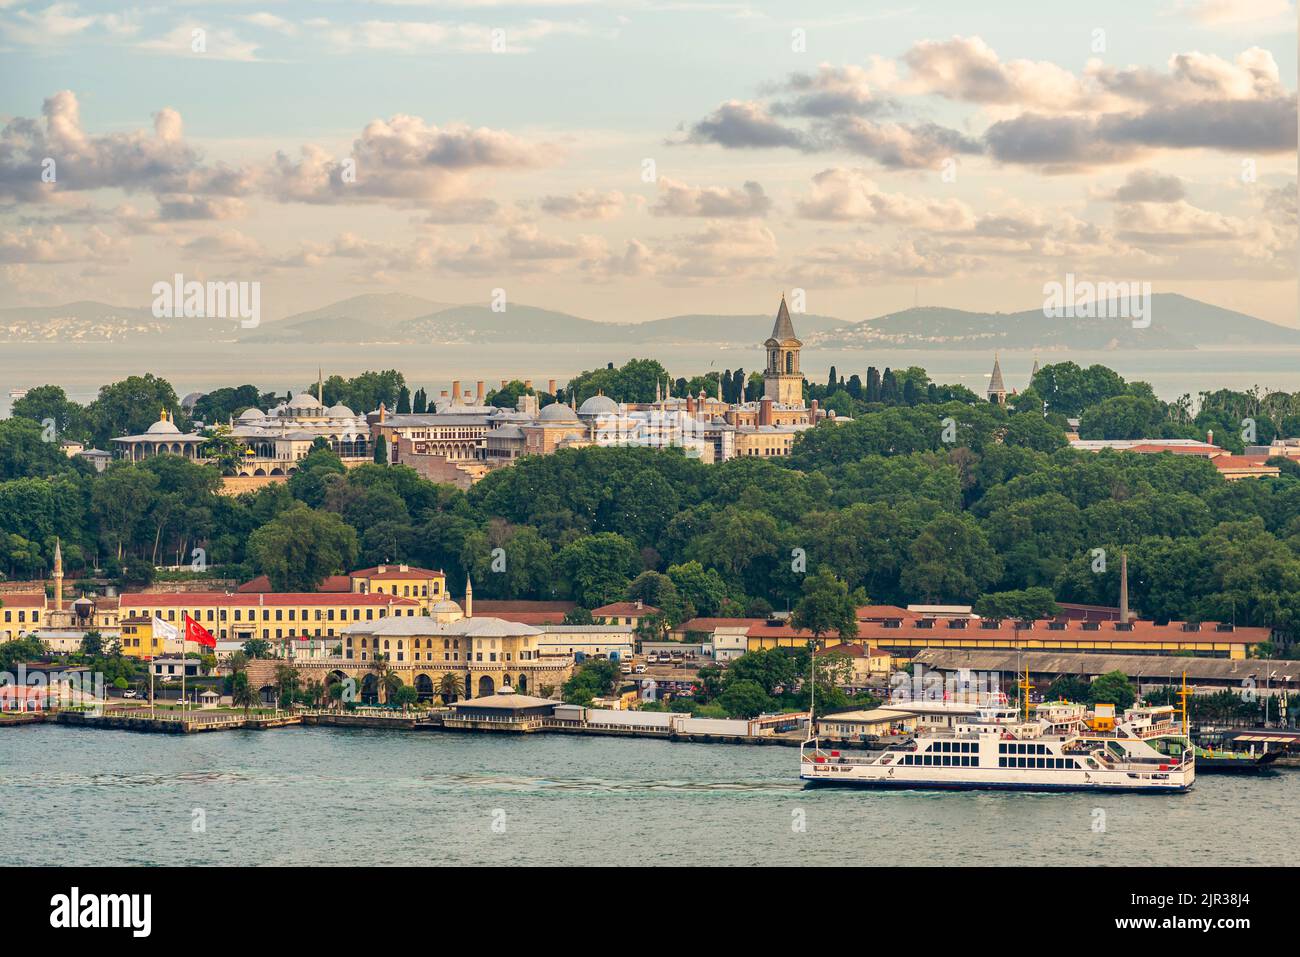 Panorama surplombant le palais de Topkapi depuis la rive opposée de la baie de la Corne d'Or d'Istanbul Banque D'Images